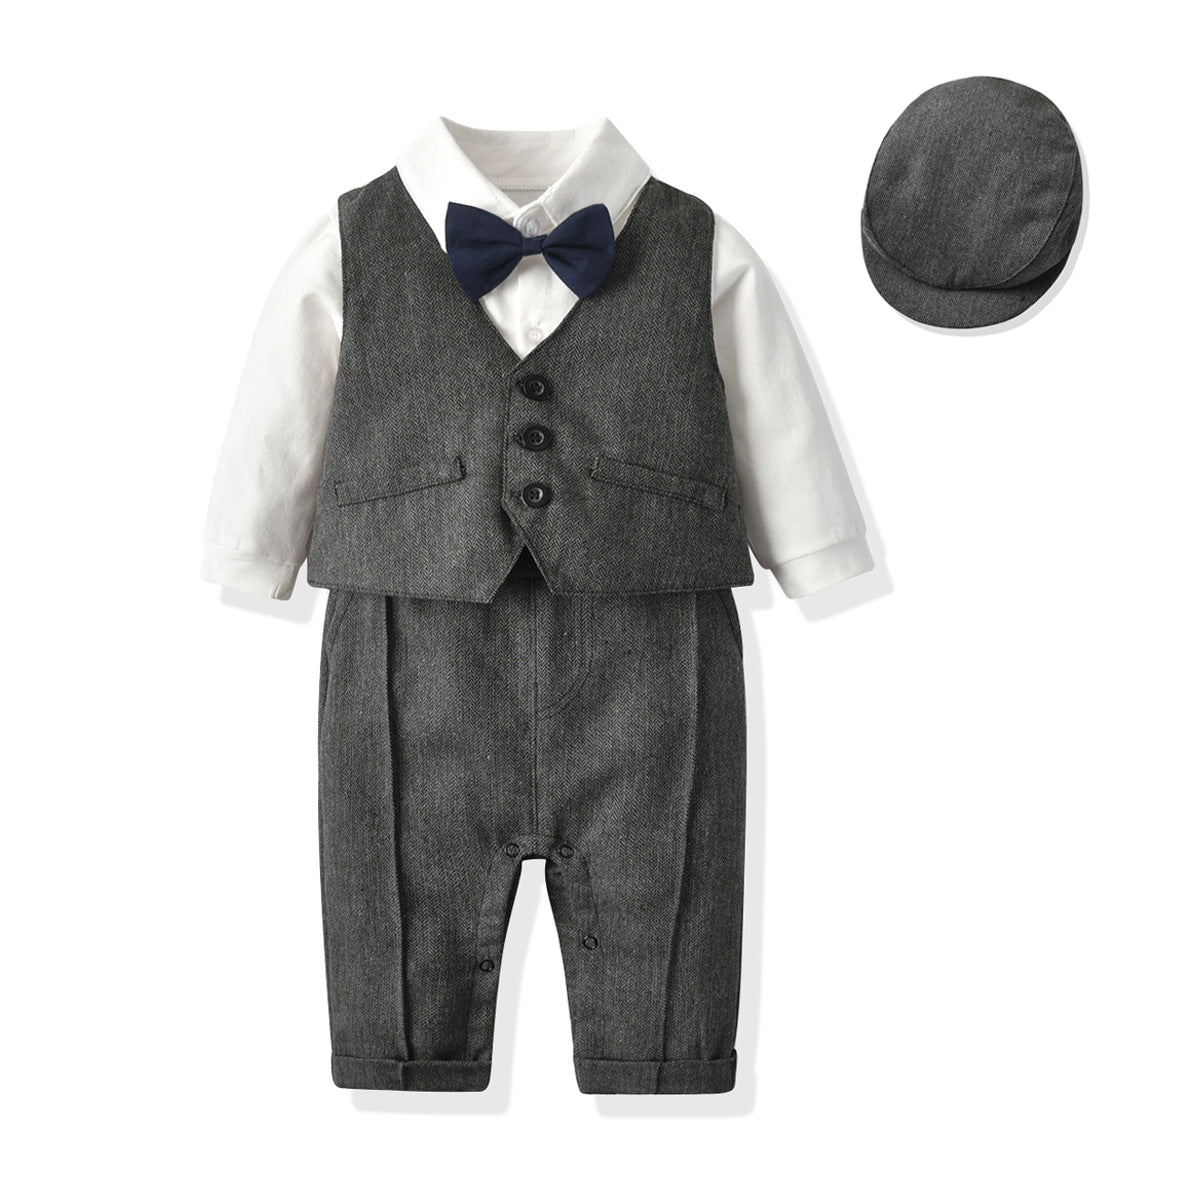 Fox British vest One-piece climbing gentleman's hat one year old clothes newborn gentleman suit